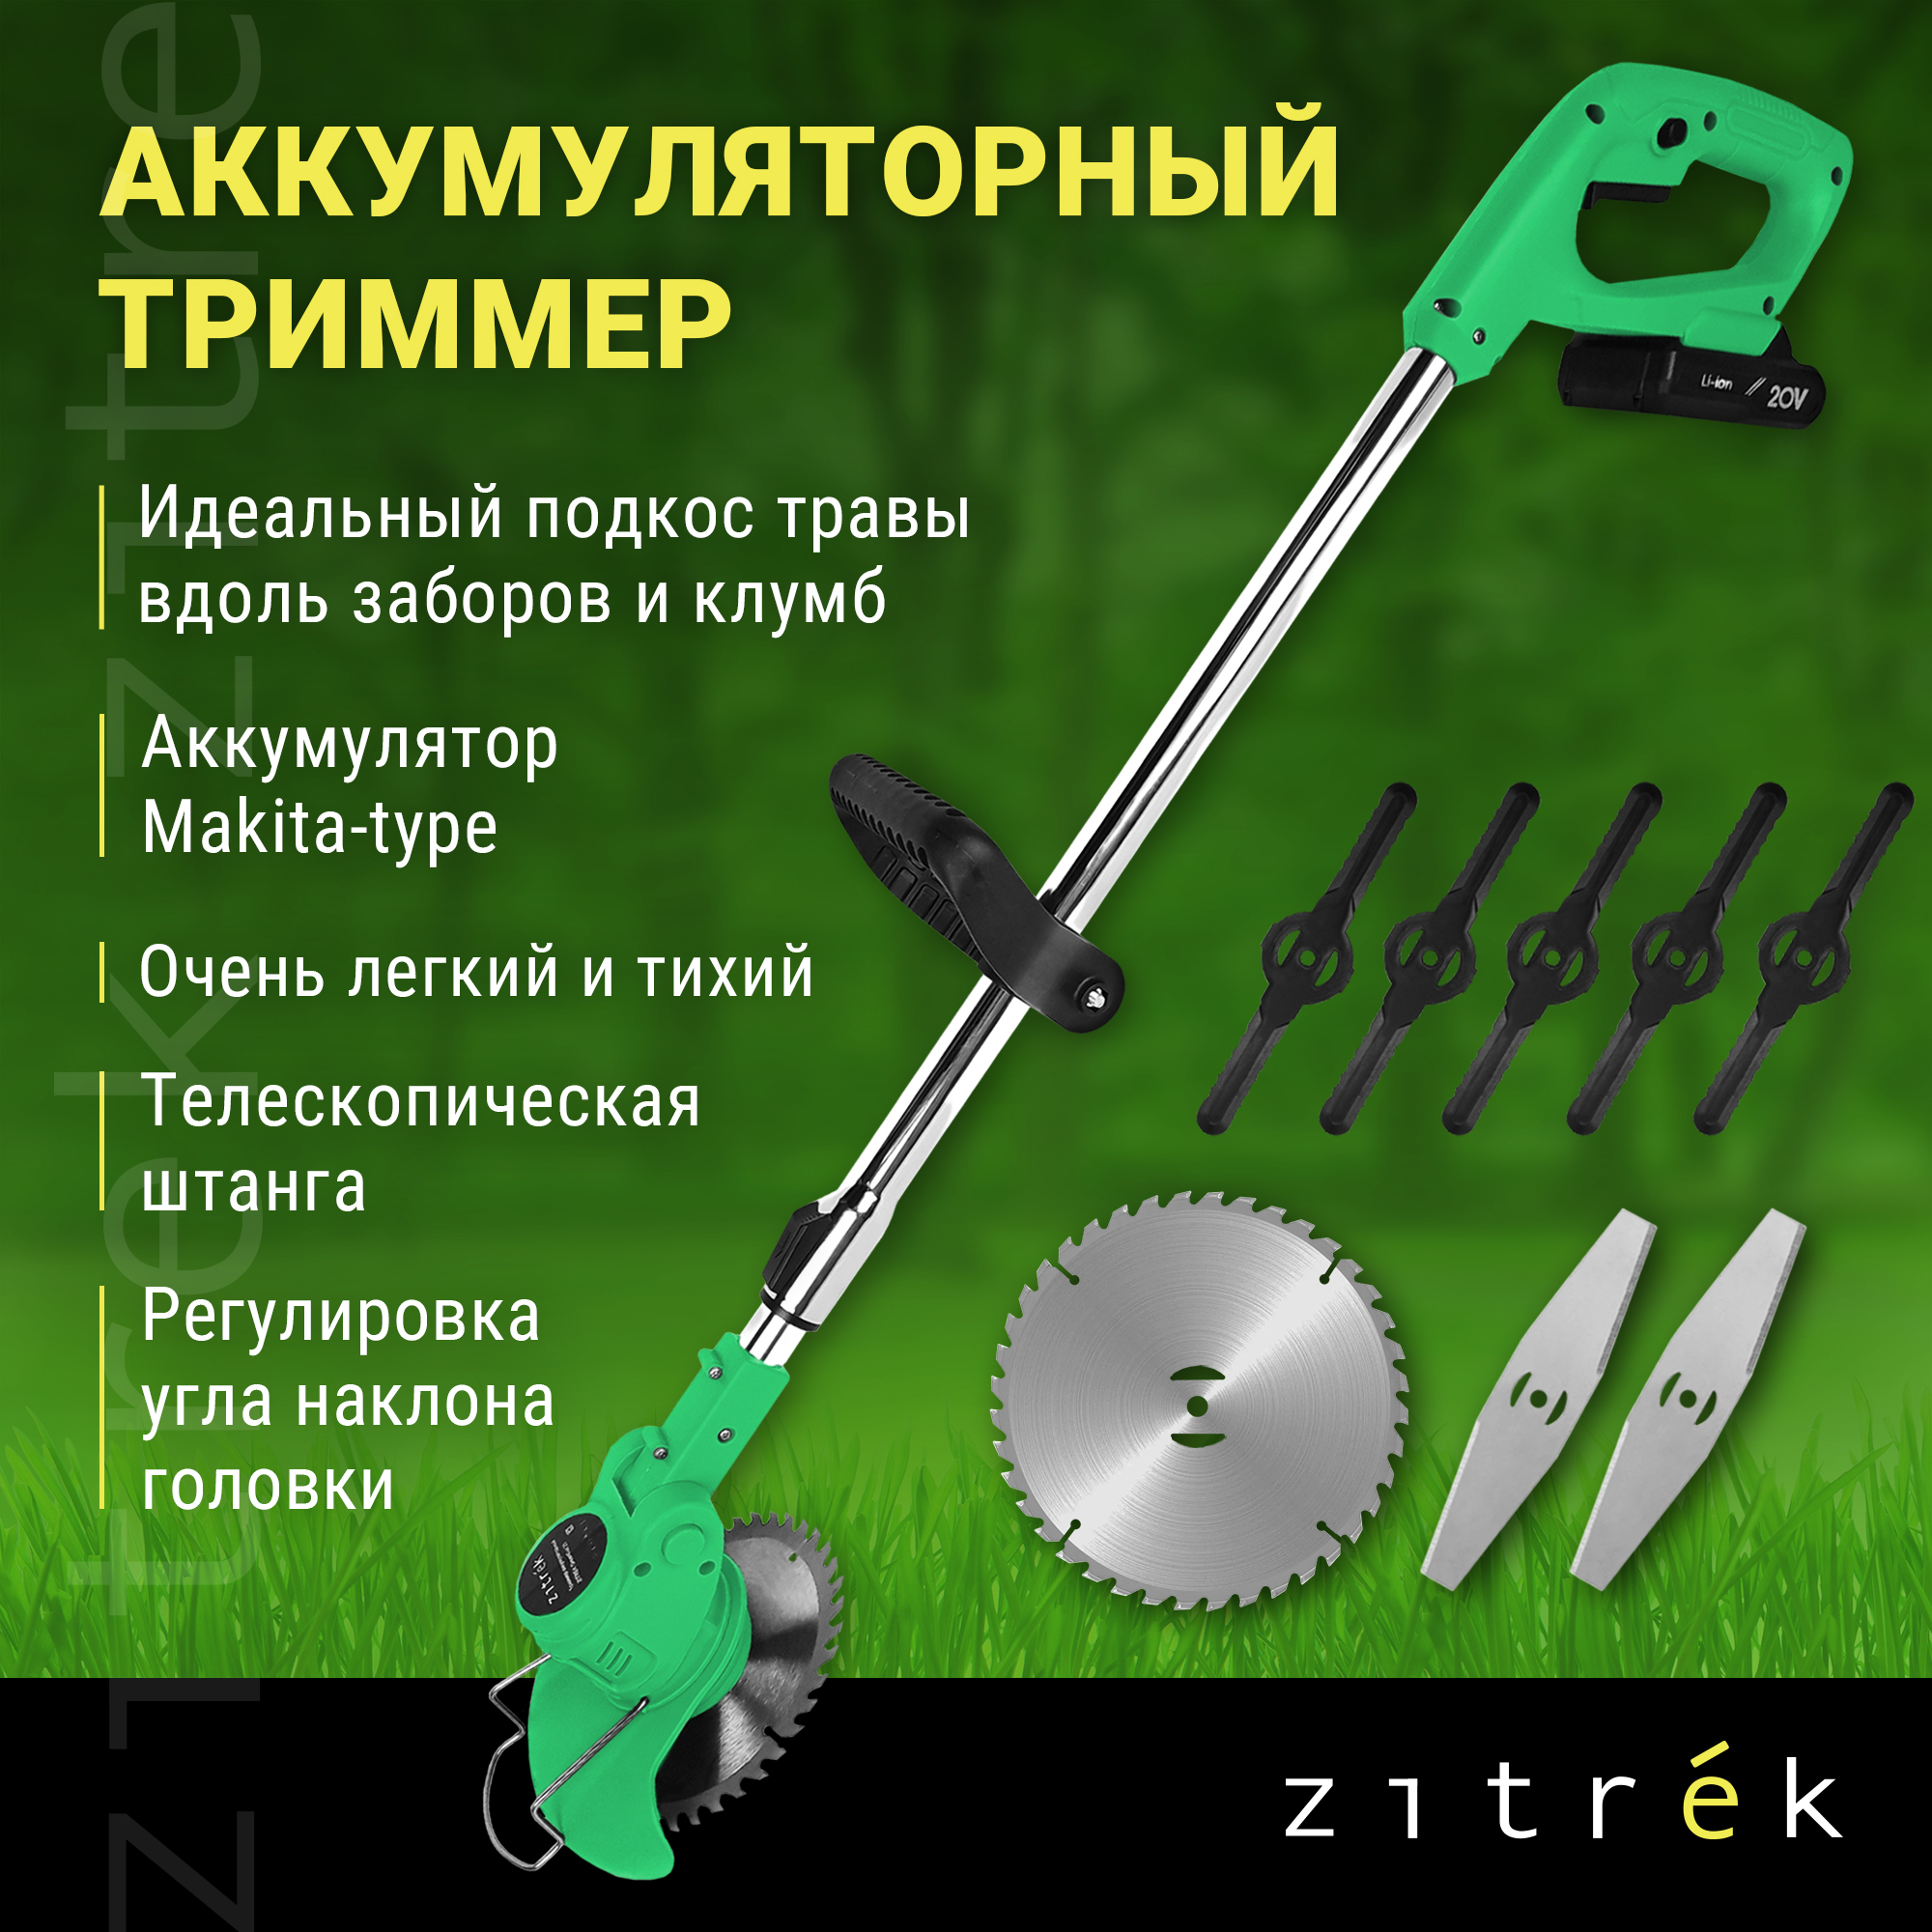 Аккумуляторный садовый триммер Zitrek GreenCut 20 082-2002 20 В АКБ и ЗУ в комплекте - отзывы покупателей на Мегамаркет | 600003555389